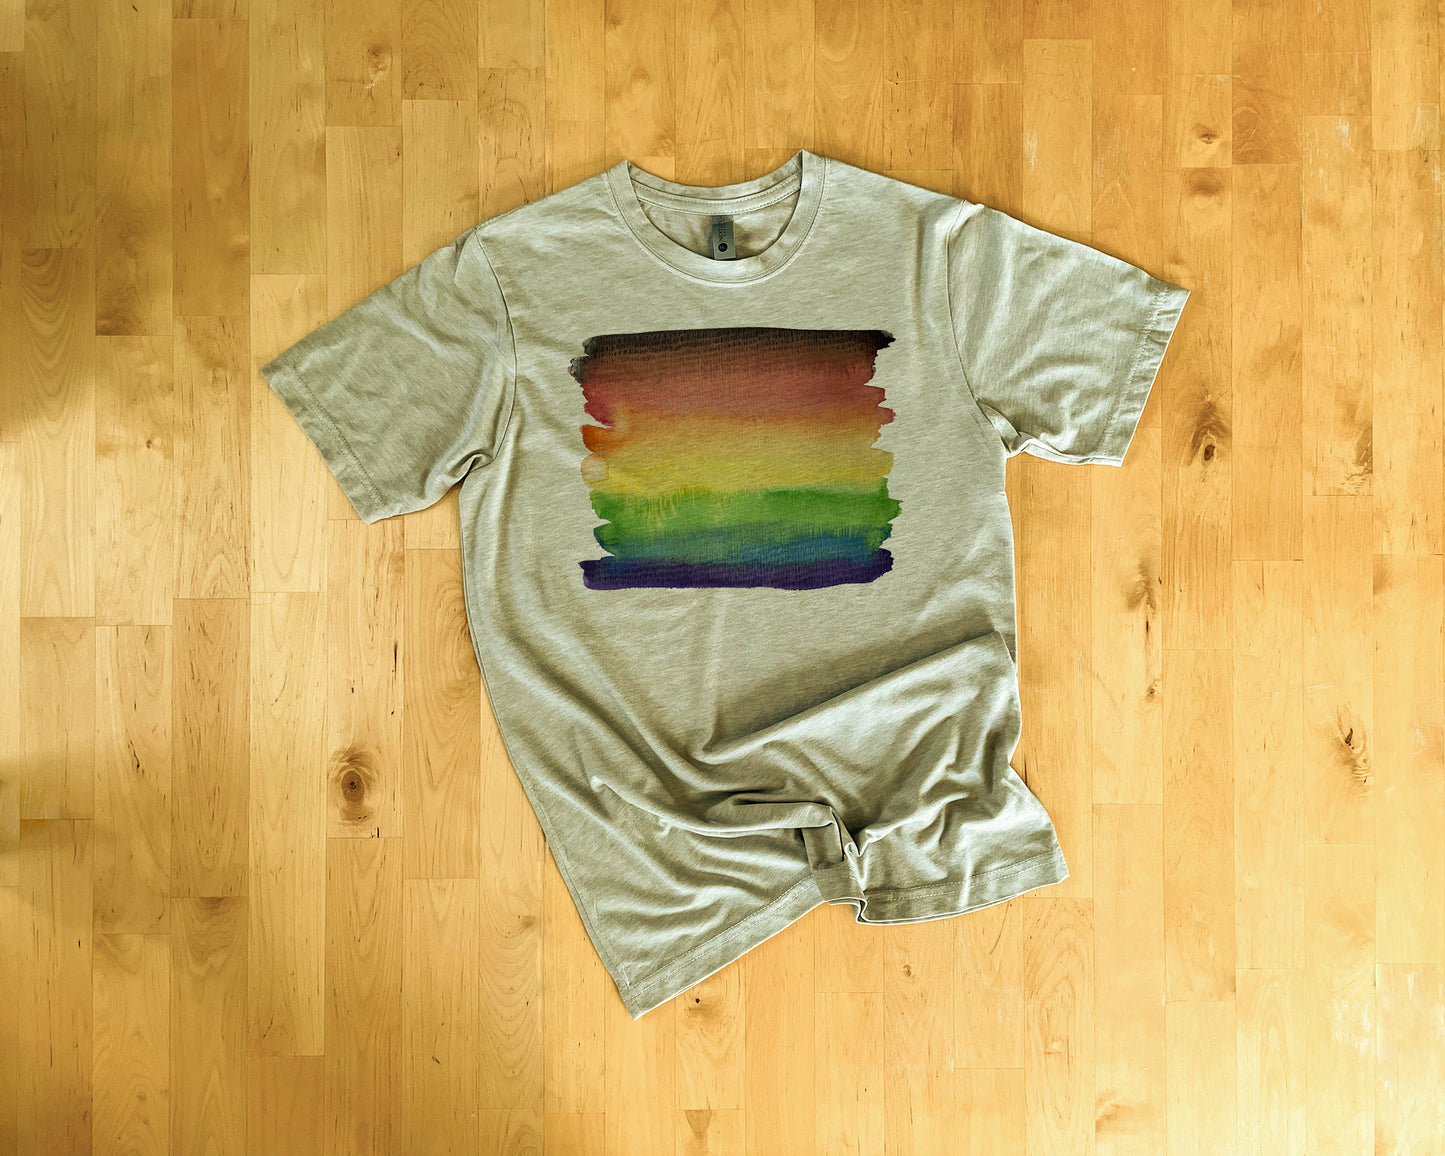 LGBTQ+ Pride Shirt